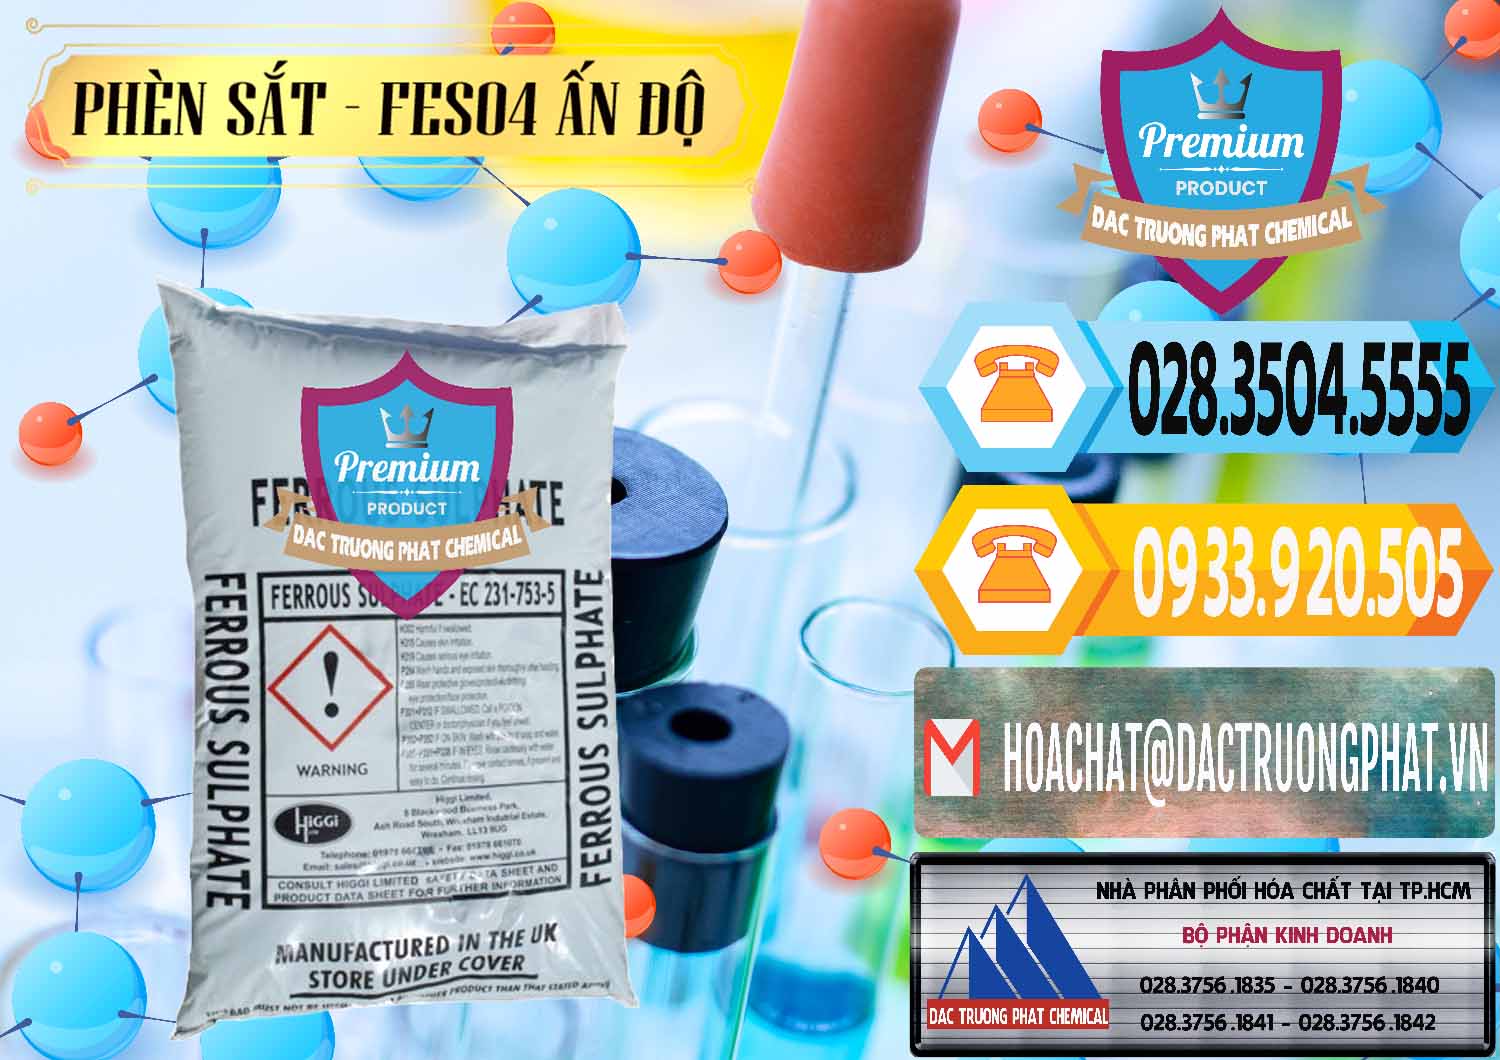 Công ty chuyên kinh doanh và bán Phèn Sắt - FeSO4.7H2O Ấn Độ India - 0354 - Nhà phân phối - bán hóa chất tại TP.HCM - hoachattayrua.net